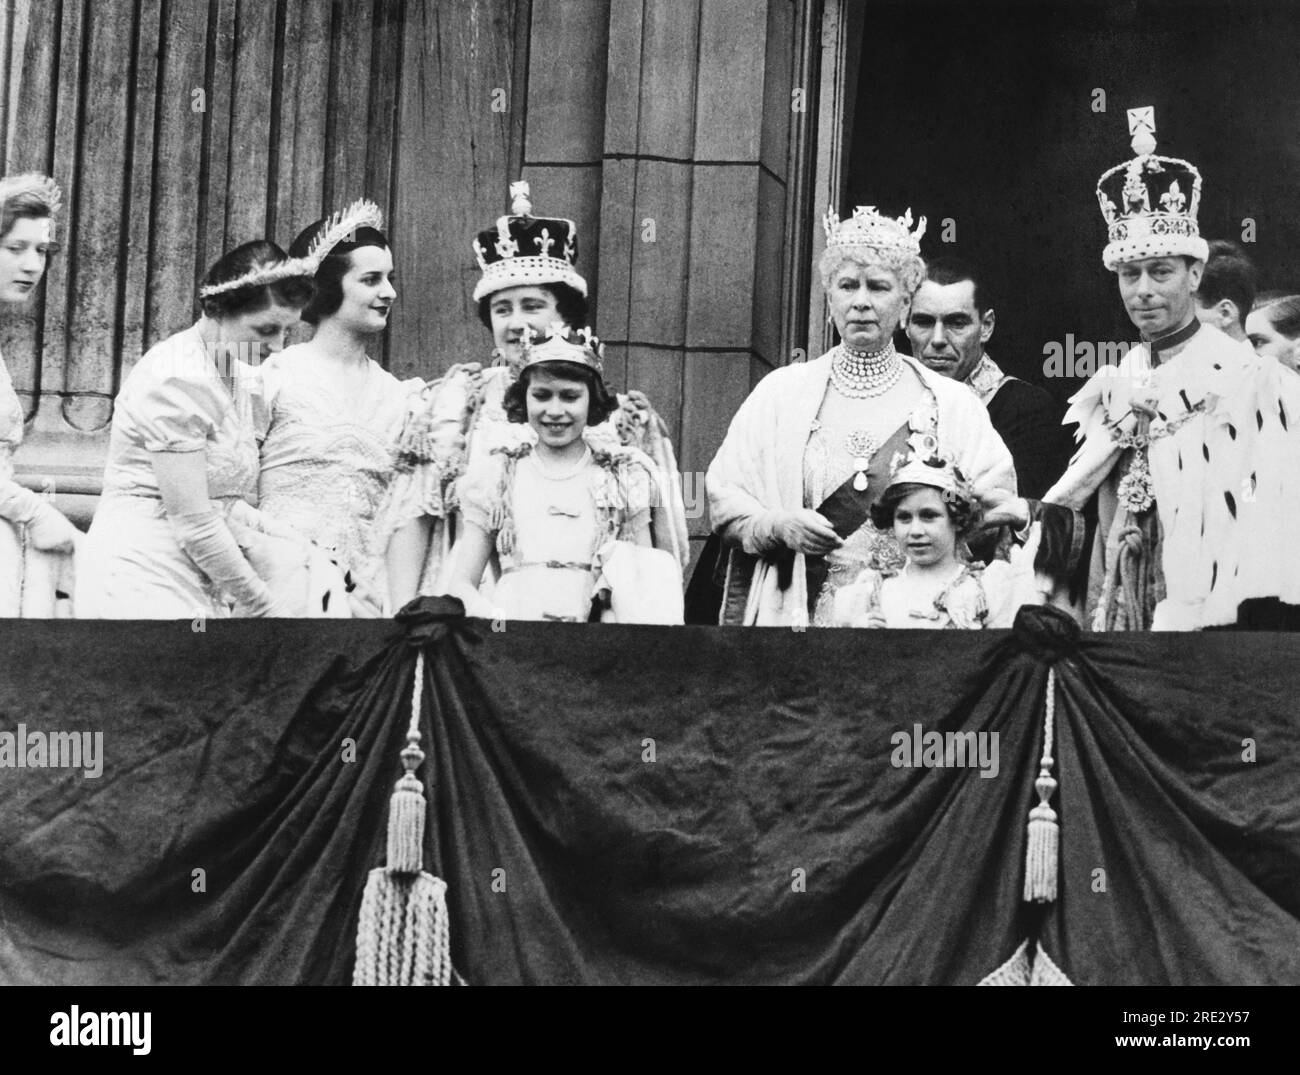 Londra, Inghilterra: 12 maggio 1937 Re Giorgio vi e la Regina Elisabetta nel giorno dell'incoronazione sul balcone di Buckingham Palace. Al centro c'è la regina Maria, e davanti c'è la principessa Elisabetta (a sinistra) e la principessa Margaret Rose, la cui corona sovradimensionata è tenuta da re Giorgio. A destra della regina Elisabetta c'è Lady Ursula Manners, una delle sue sei portatrici di addestramento. Foto Stock